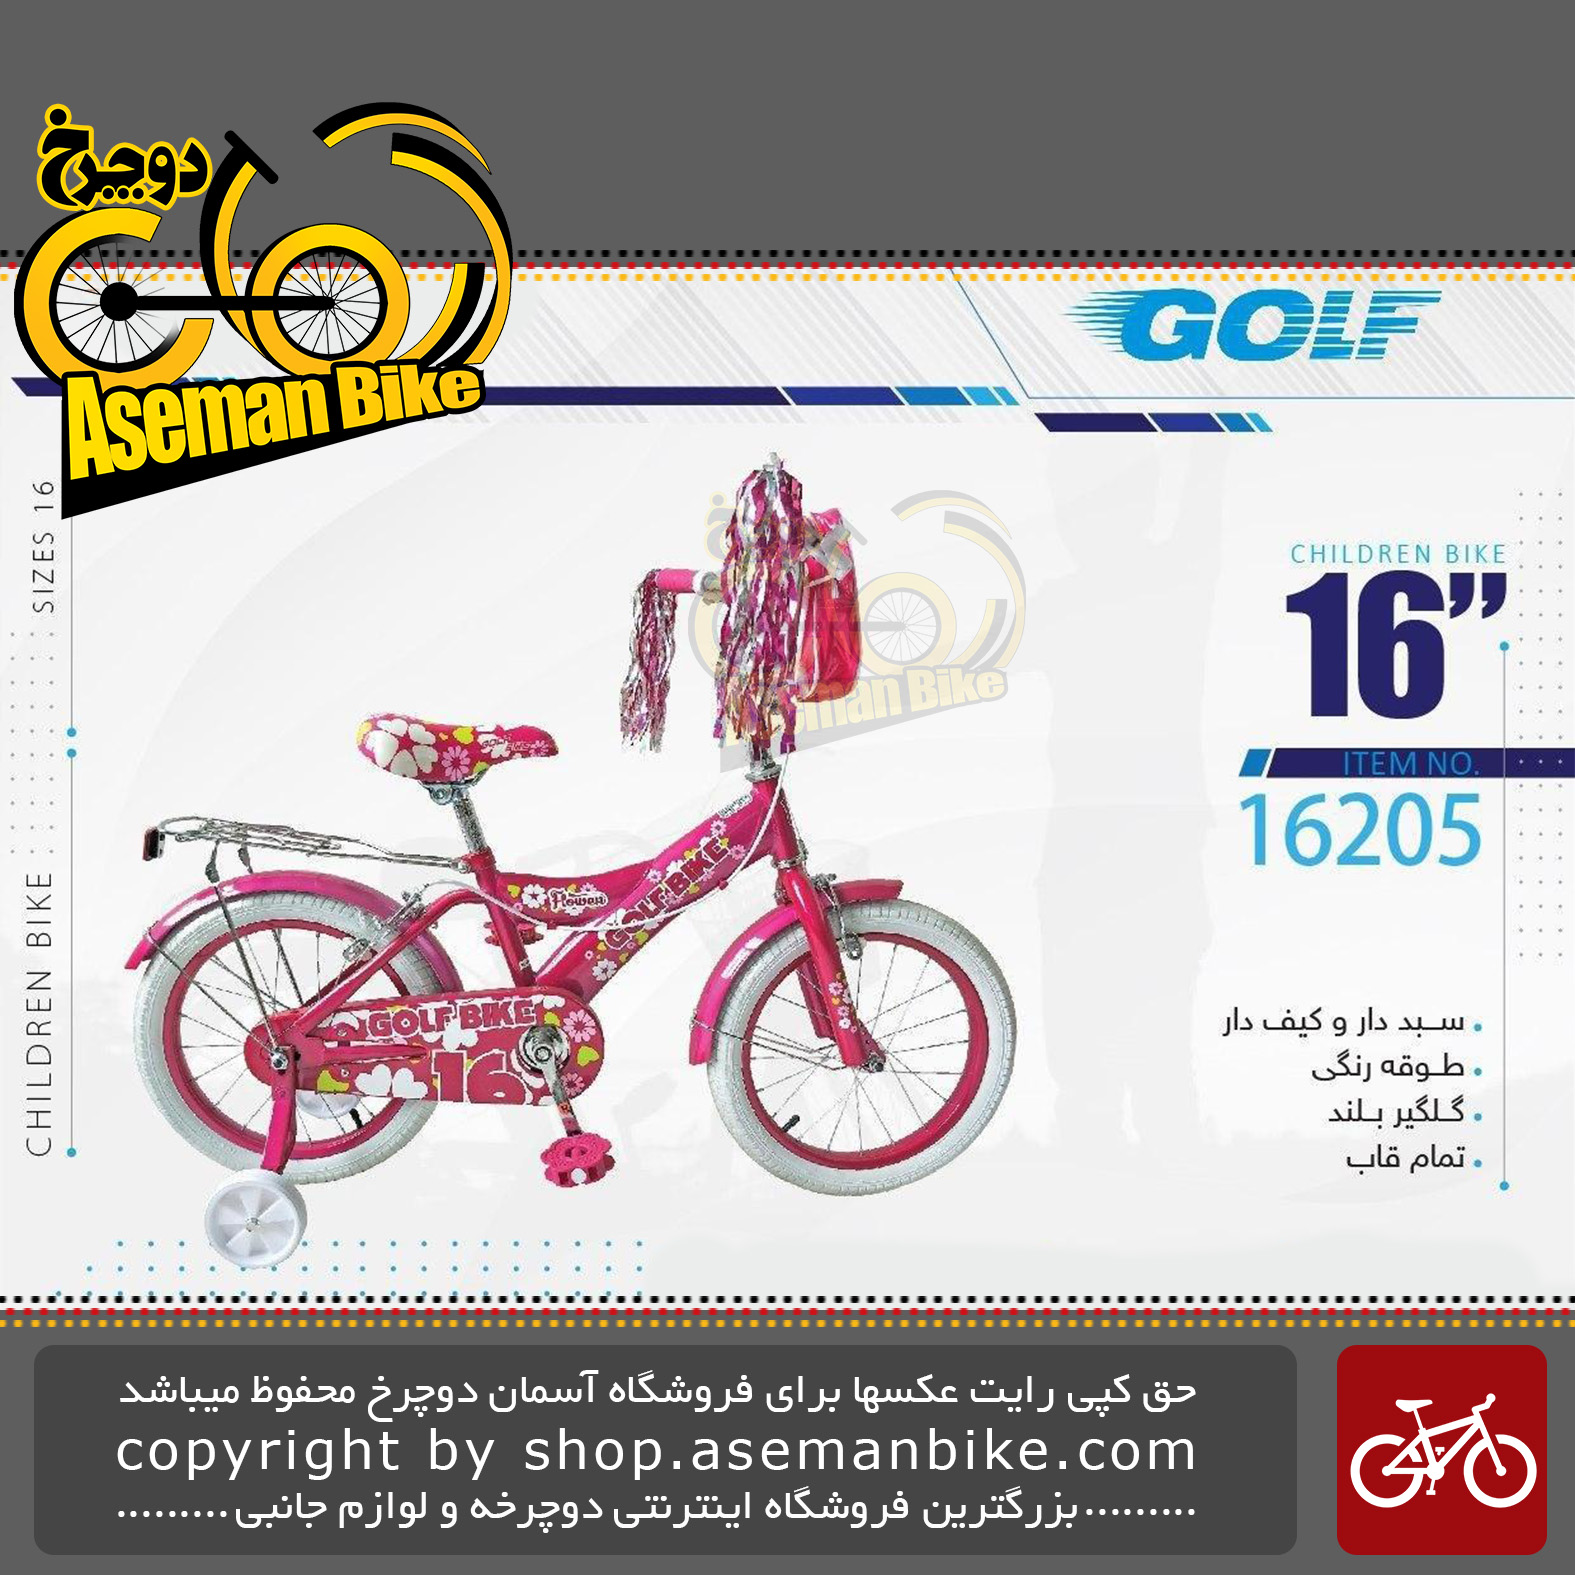 دوچرخه دخترانه بچگانه گلف سایز 16 ترکبندار کیف دار مدل 16205 GOLF Bicycle Kids Size 16 Model 16205